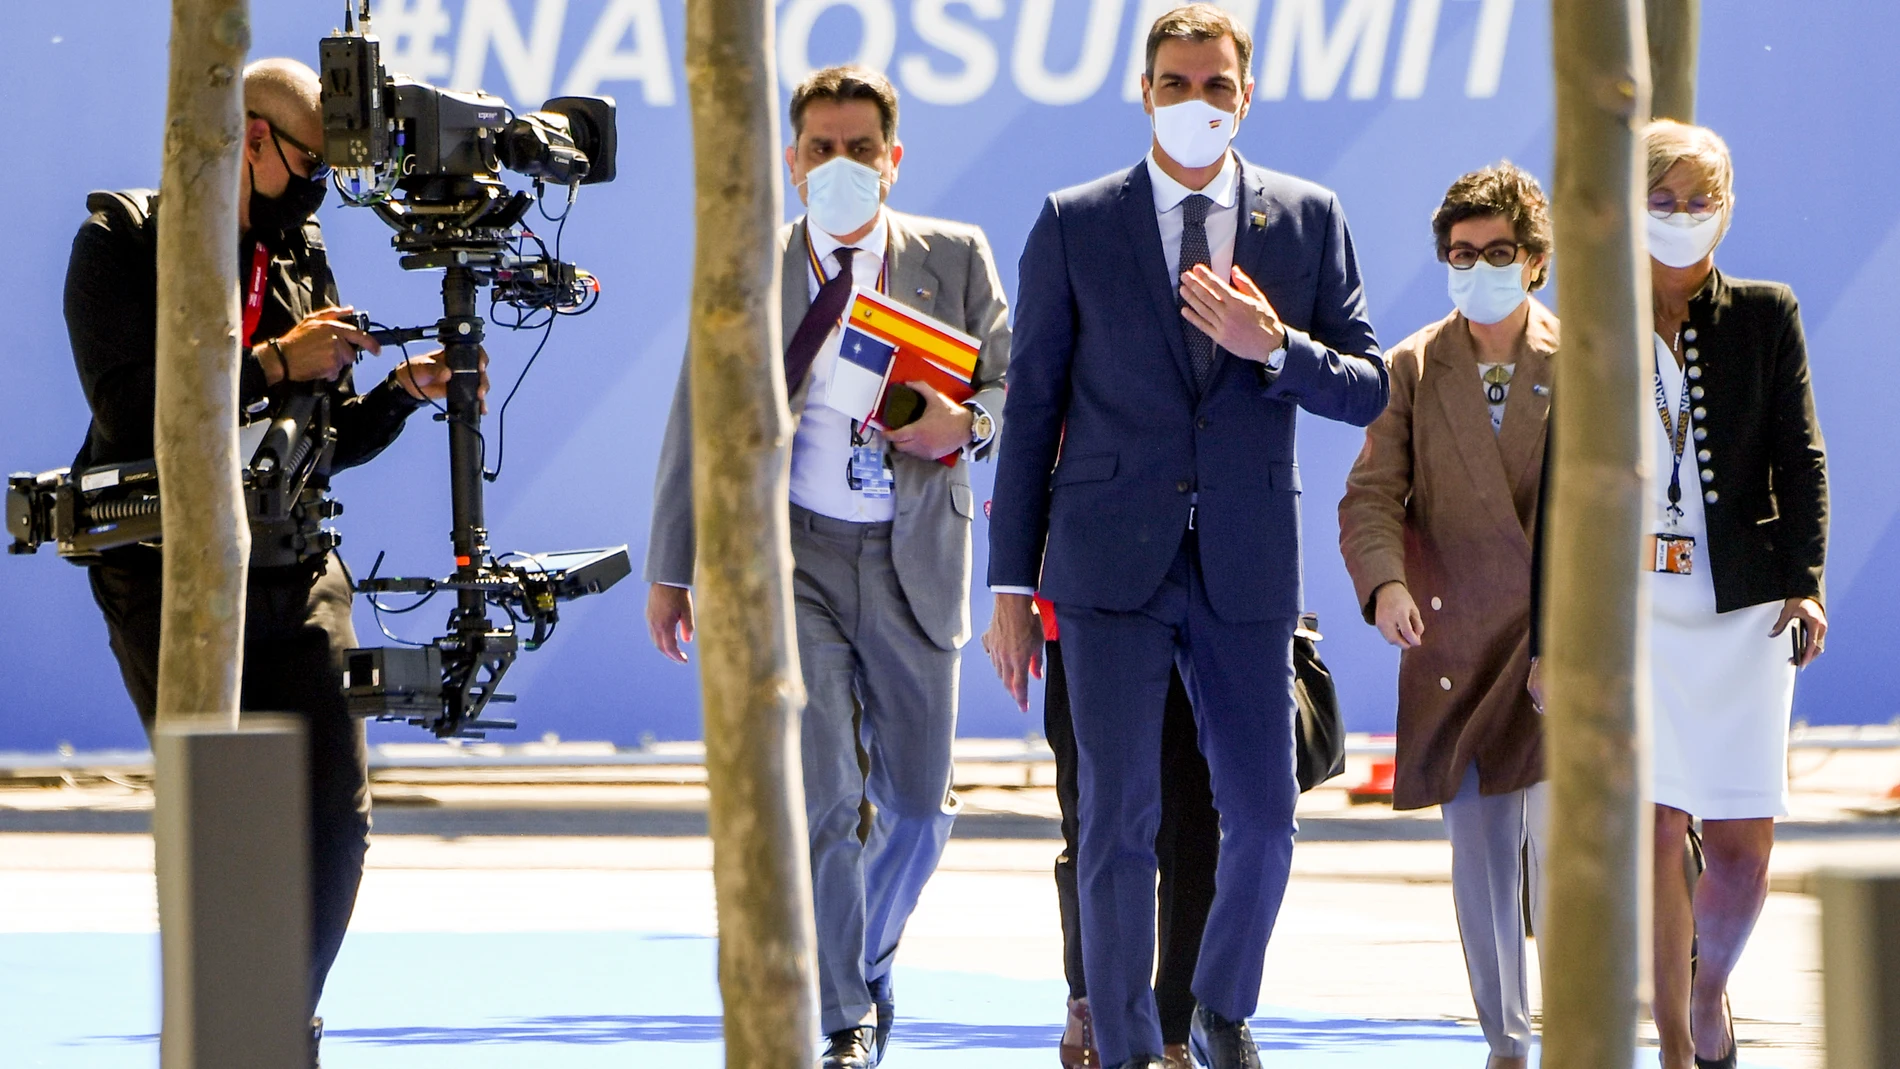 El presidente del Gobierno, Pedro Sánchez llega a la reunión de jefes de Estado y de Gobierno de la OTAN, acompañado de la ministra de Asuntos Exteriores, Unión Europea y Cooperación, Arancha González Laya